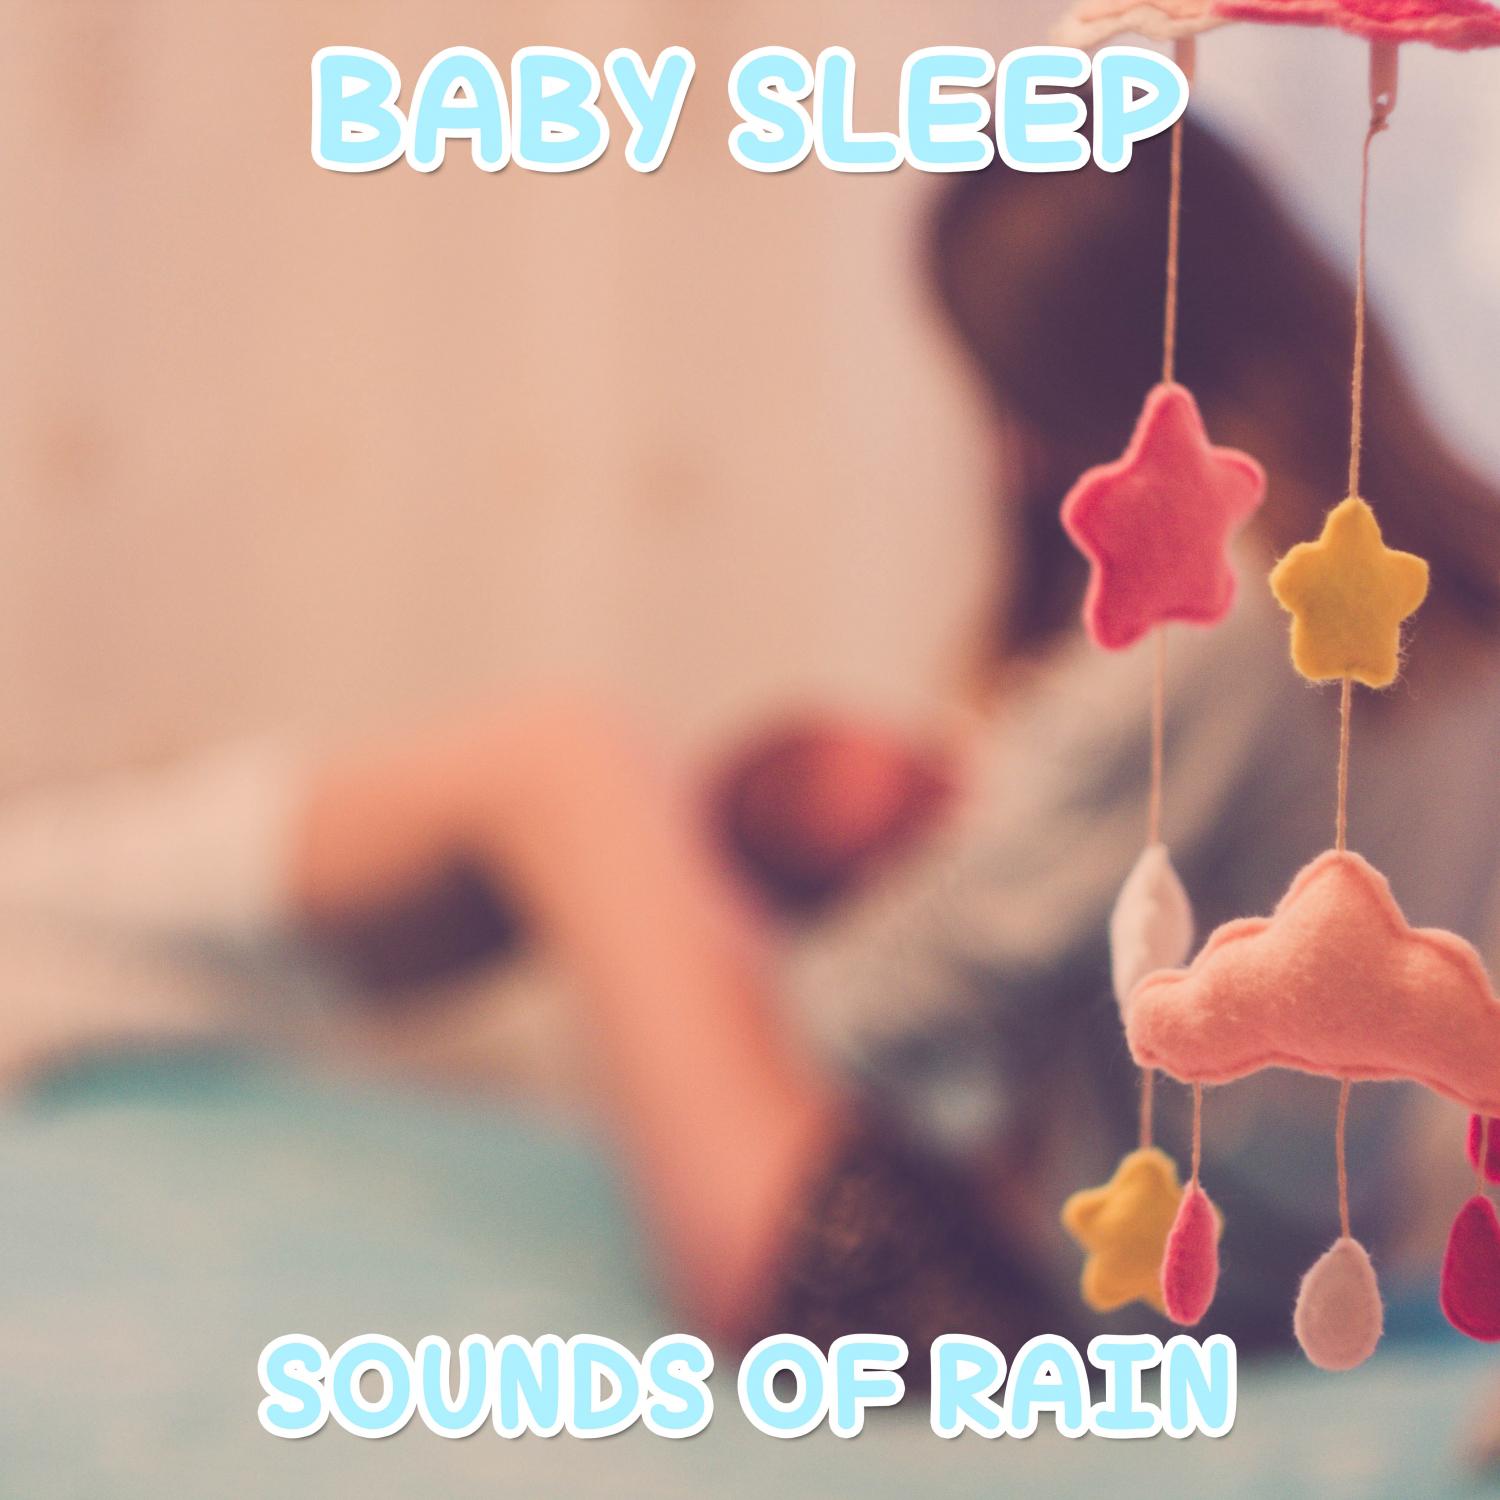 15 Baby Sleep Sounds of Rain to Help Your Baby Sleep Properly